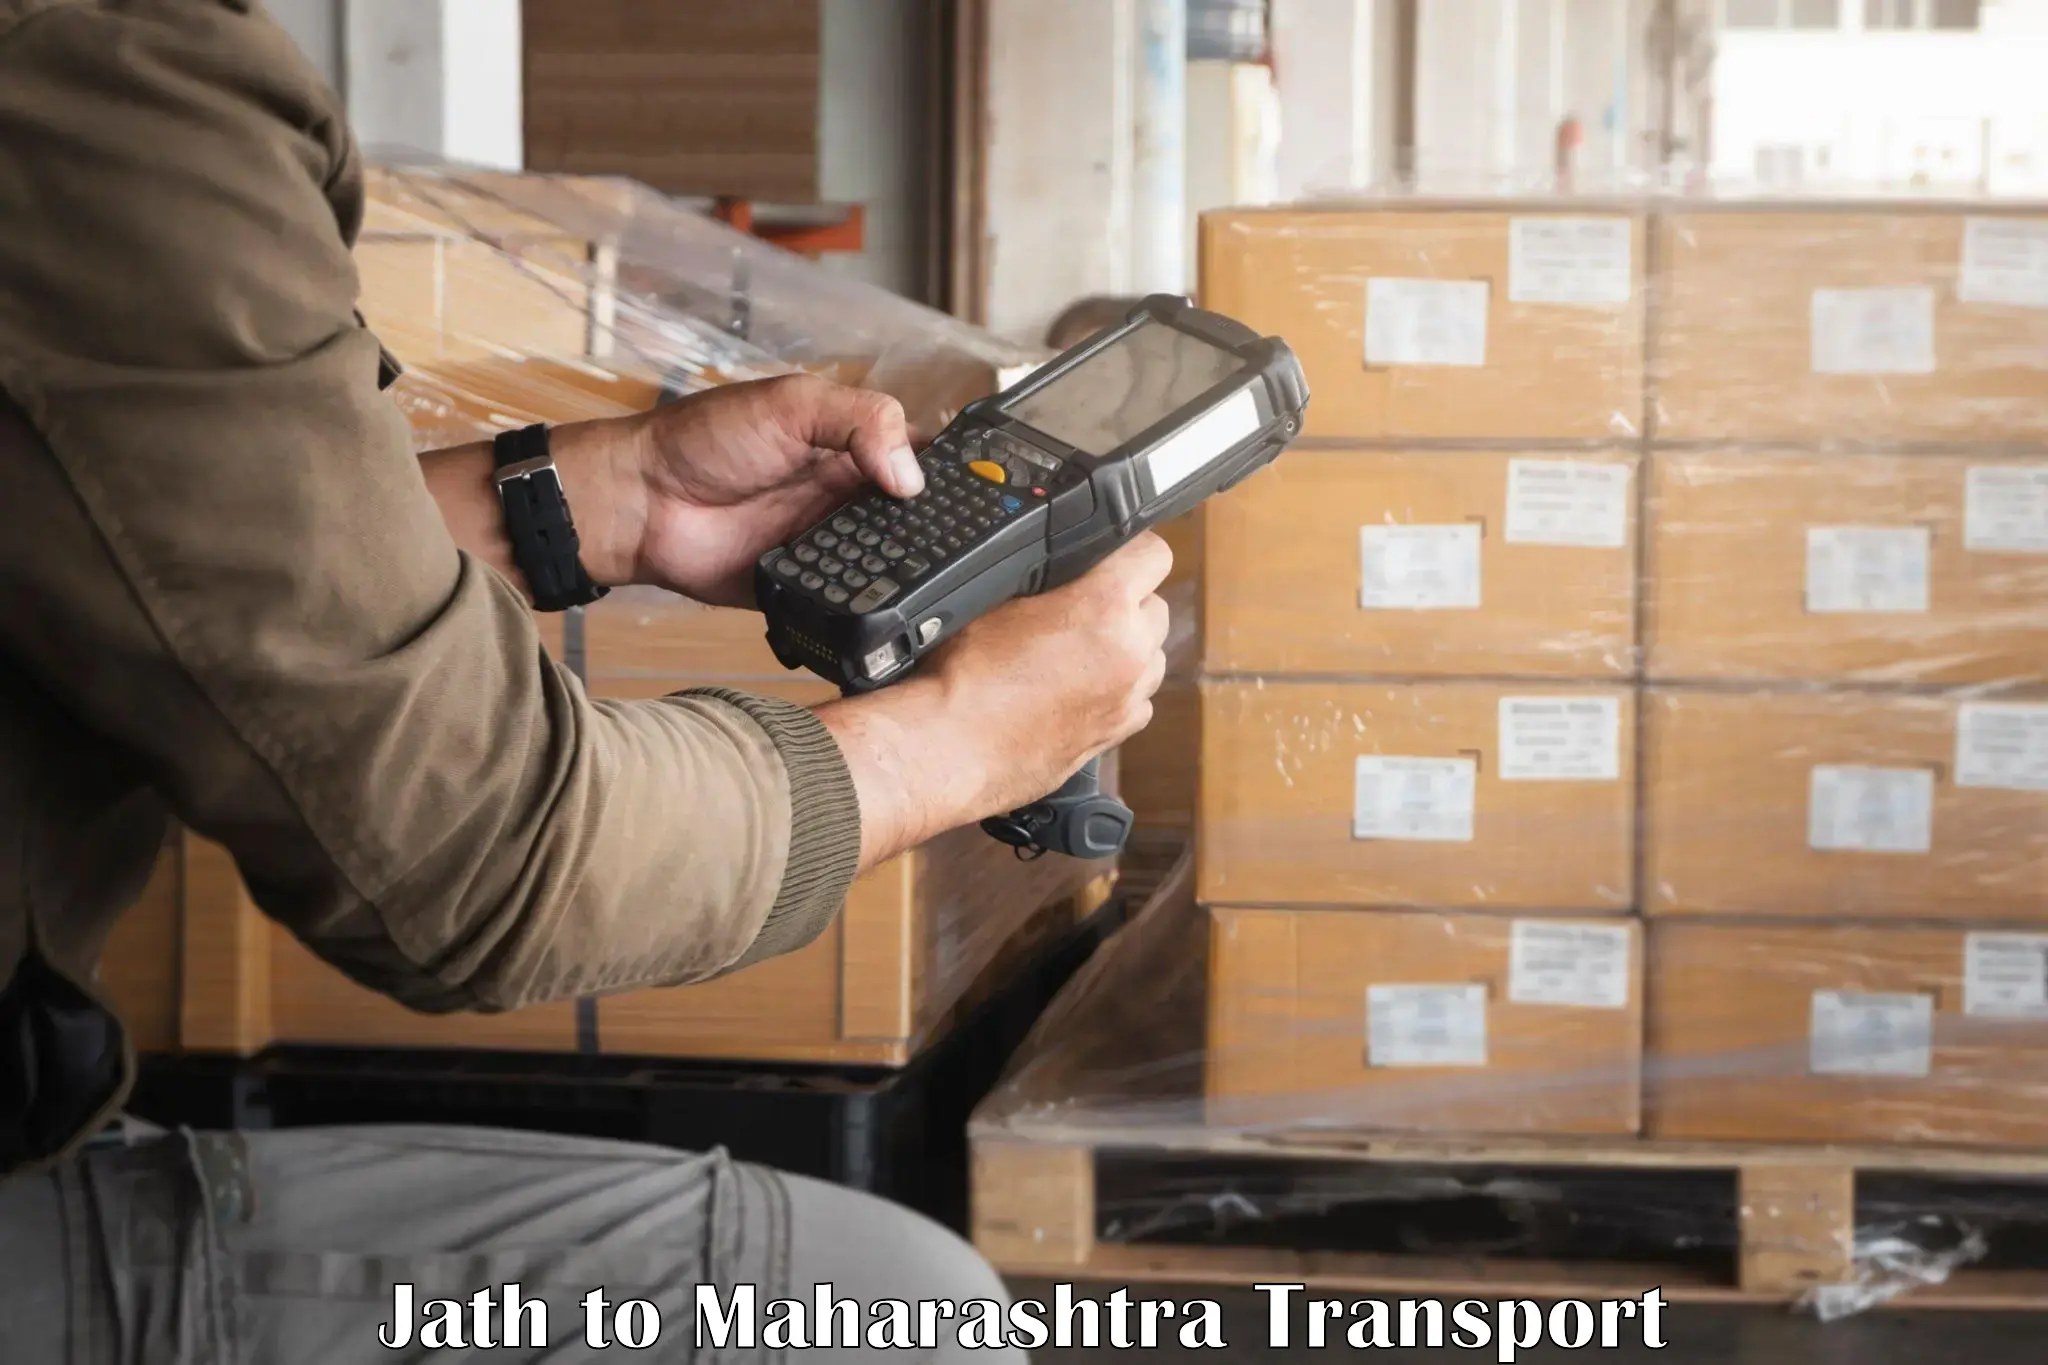 Shipping services Jath to Maharashtra